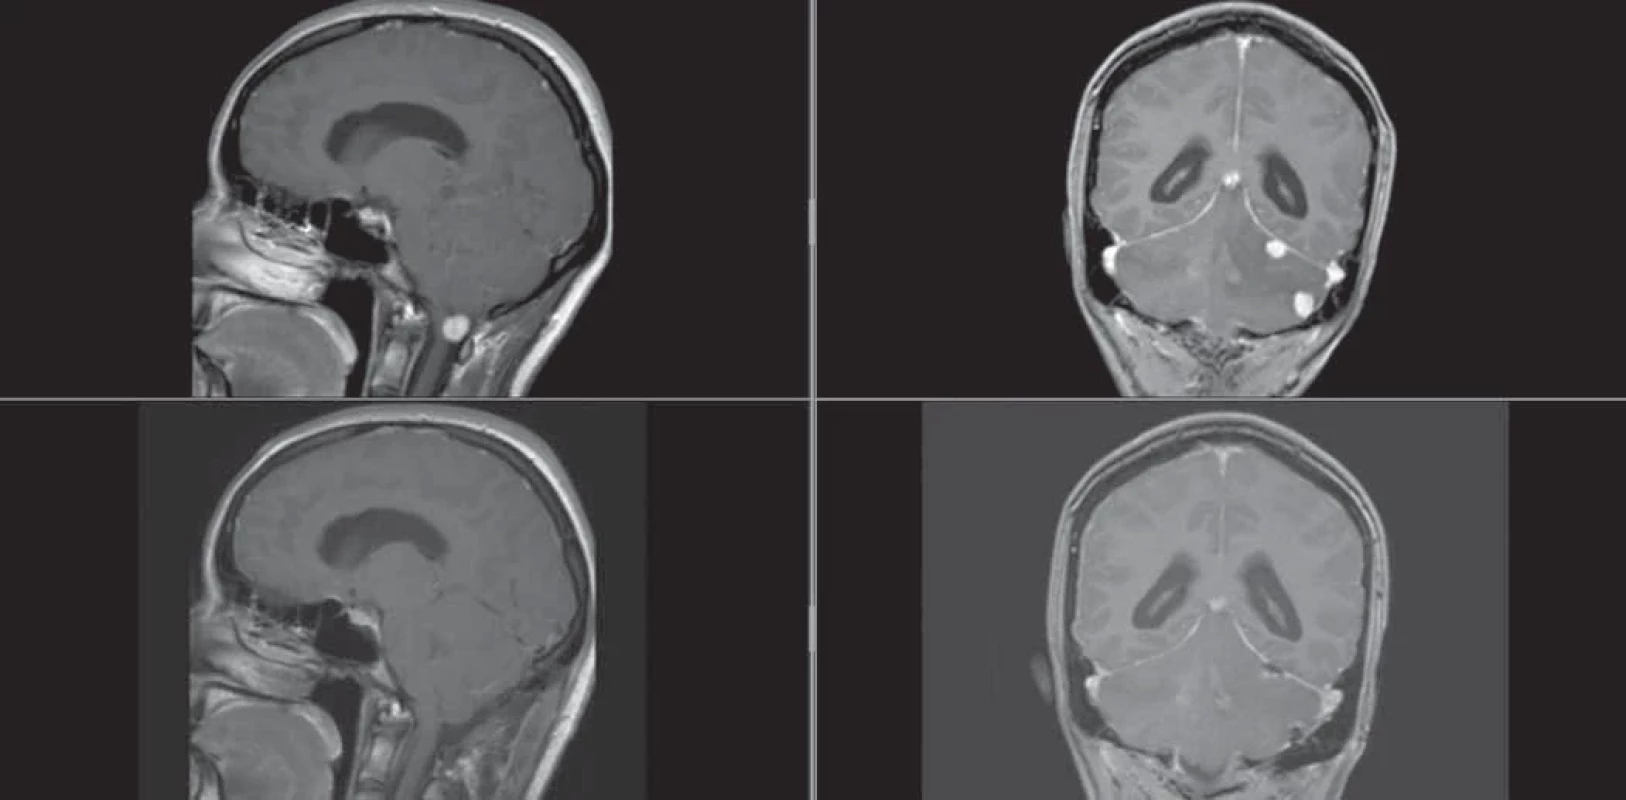 Postkontrastní zobrazení MR mozku před první akutní operací pacientky. (A) Na sagitálním řezu hemangioblastom s kompresí medula oblongata; (B) na koronárním řezu dvě ložiska v oblasti levé mozečkové hemisféry s perifokálním edémem. Ve spodní části zachyceny identické řezy na pooperační kontrole pacientky.